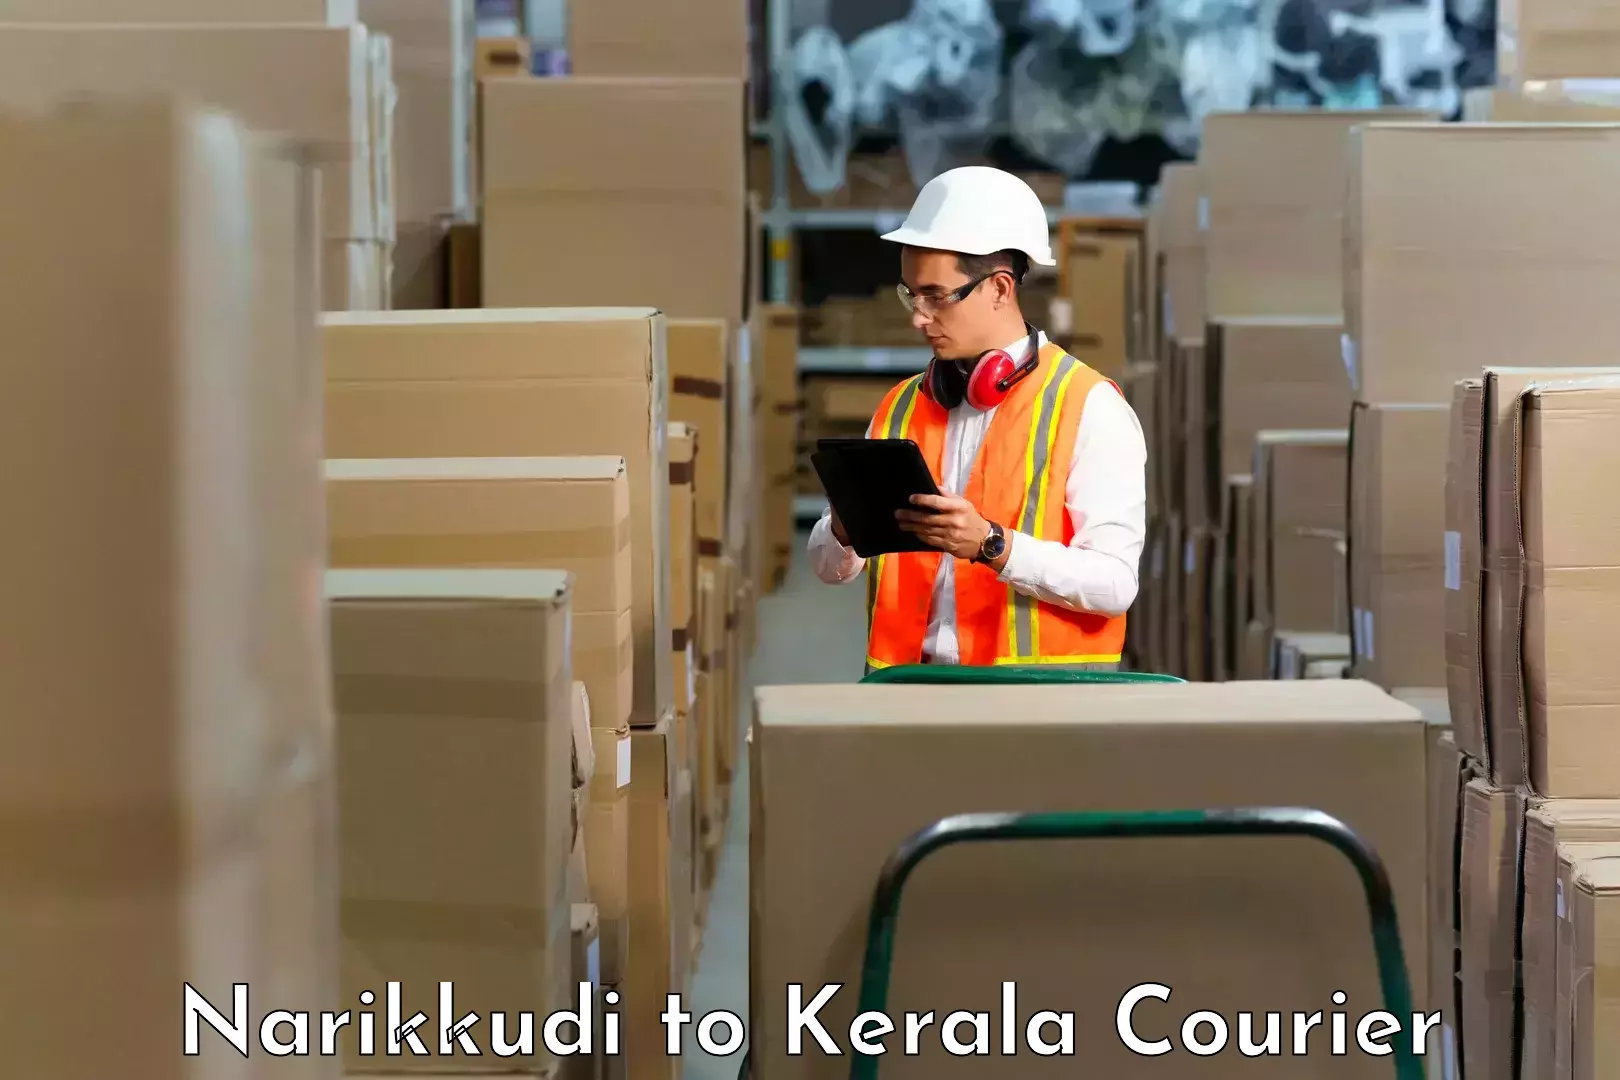 Reliable delivery network Narikkudi to Cochin Port Kochi